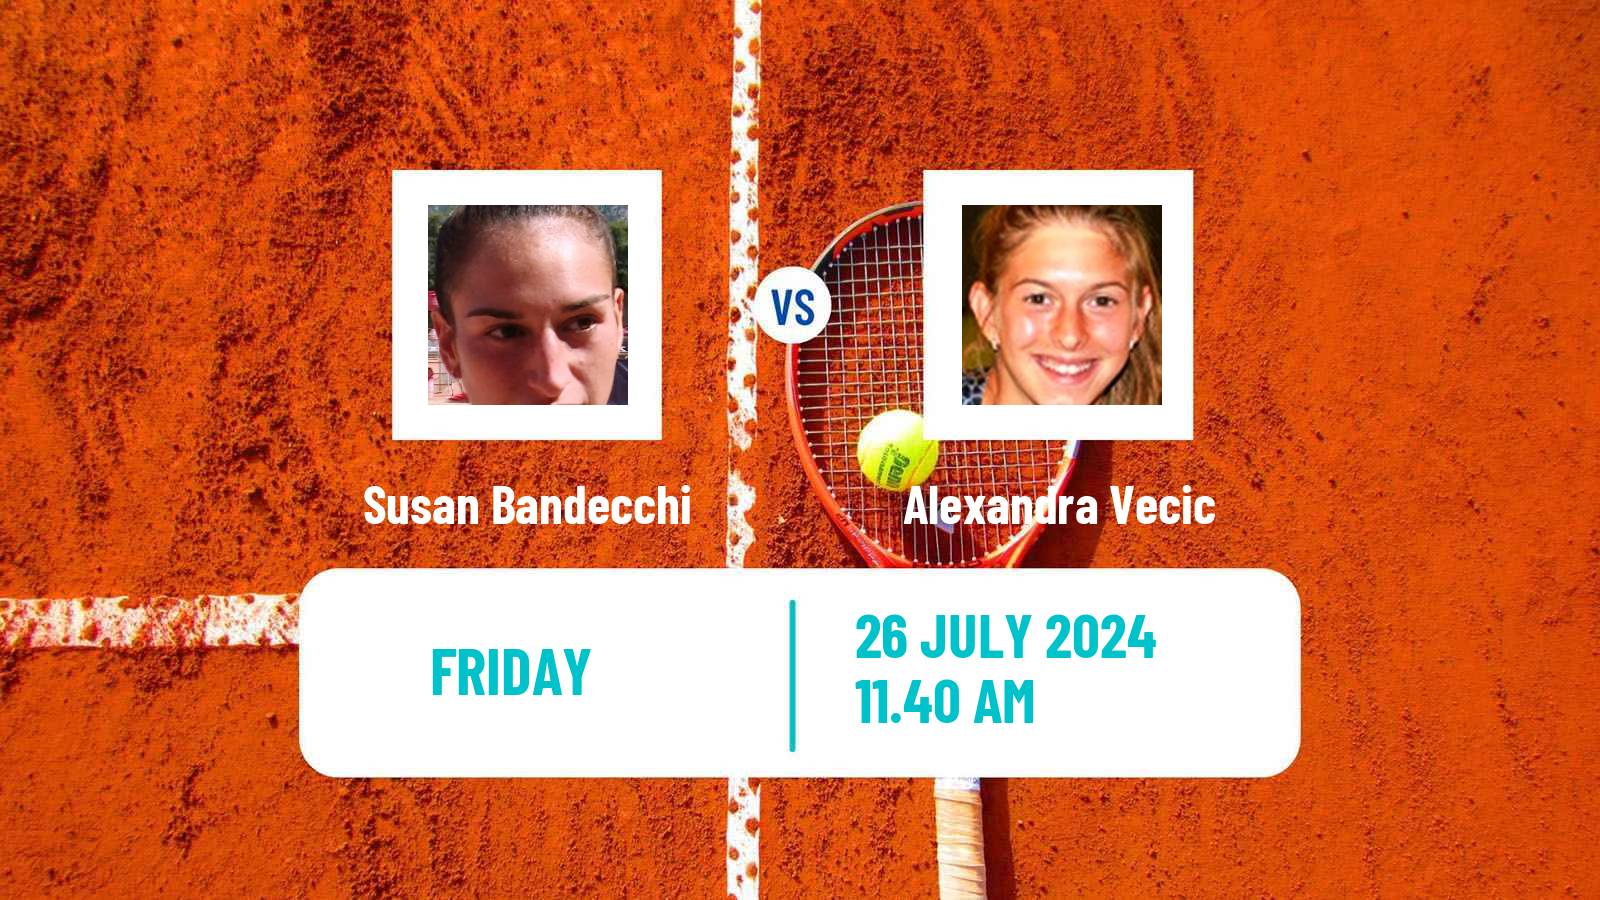 Tennis ITF W35 Horb Women Susan Bandecchi - Alexandra Vecic